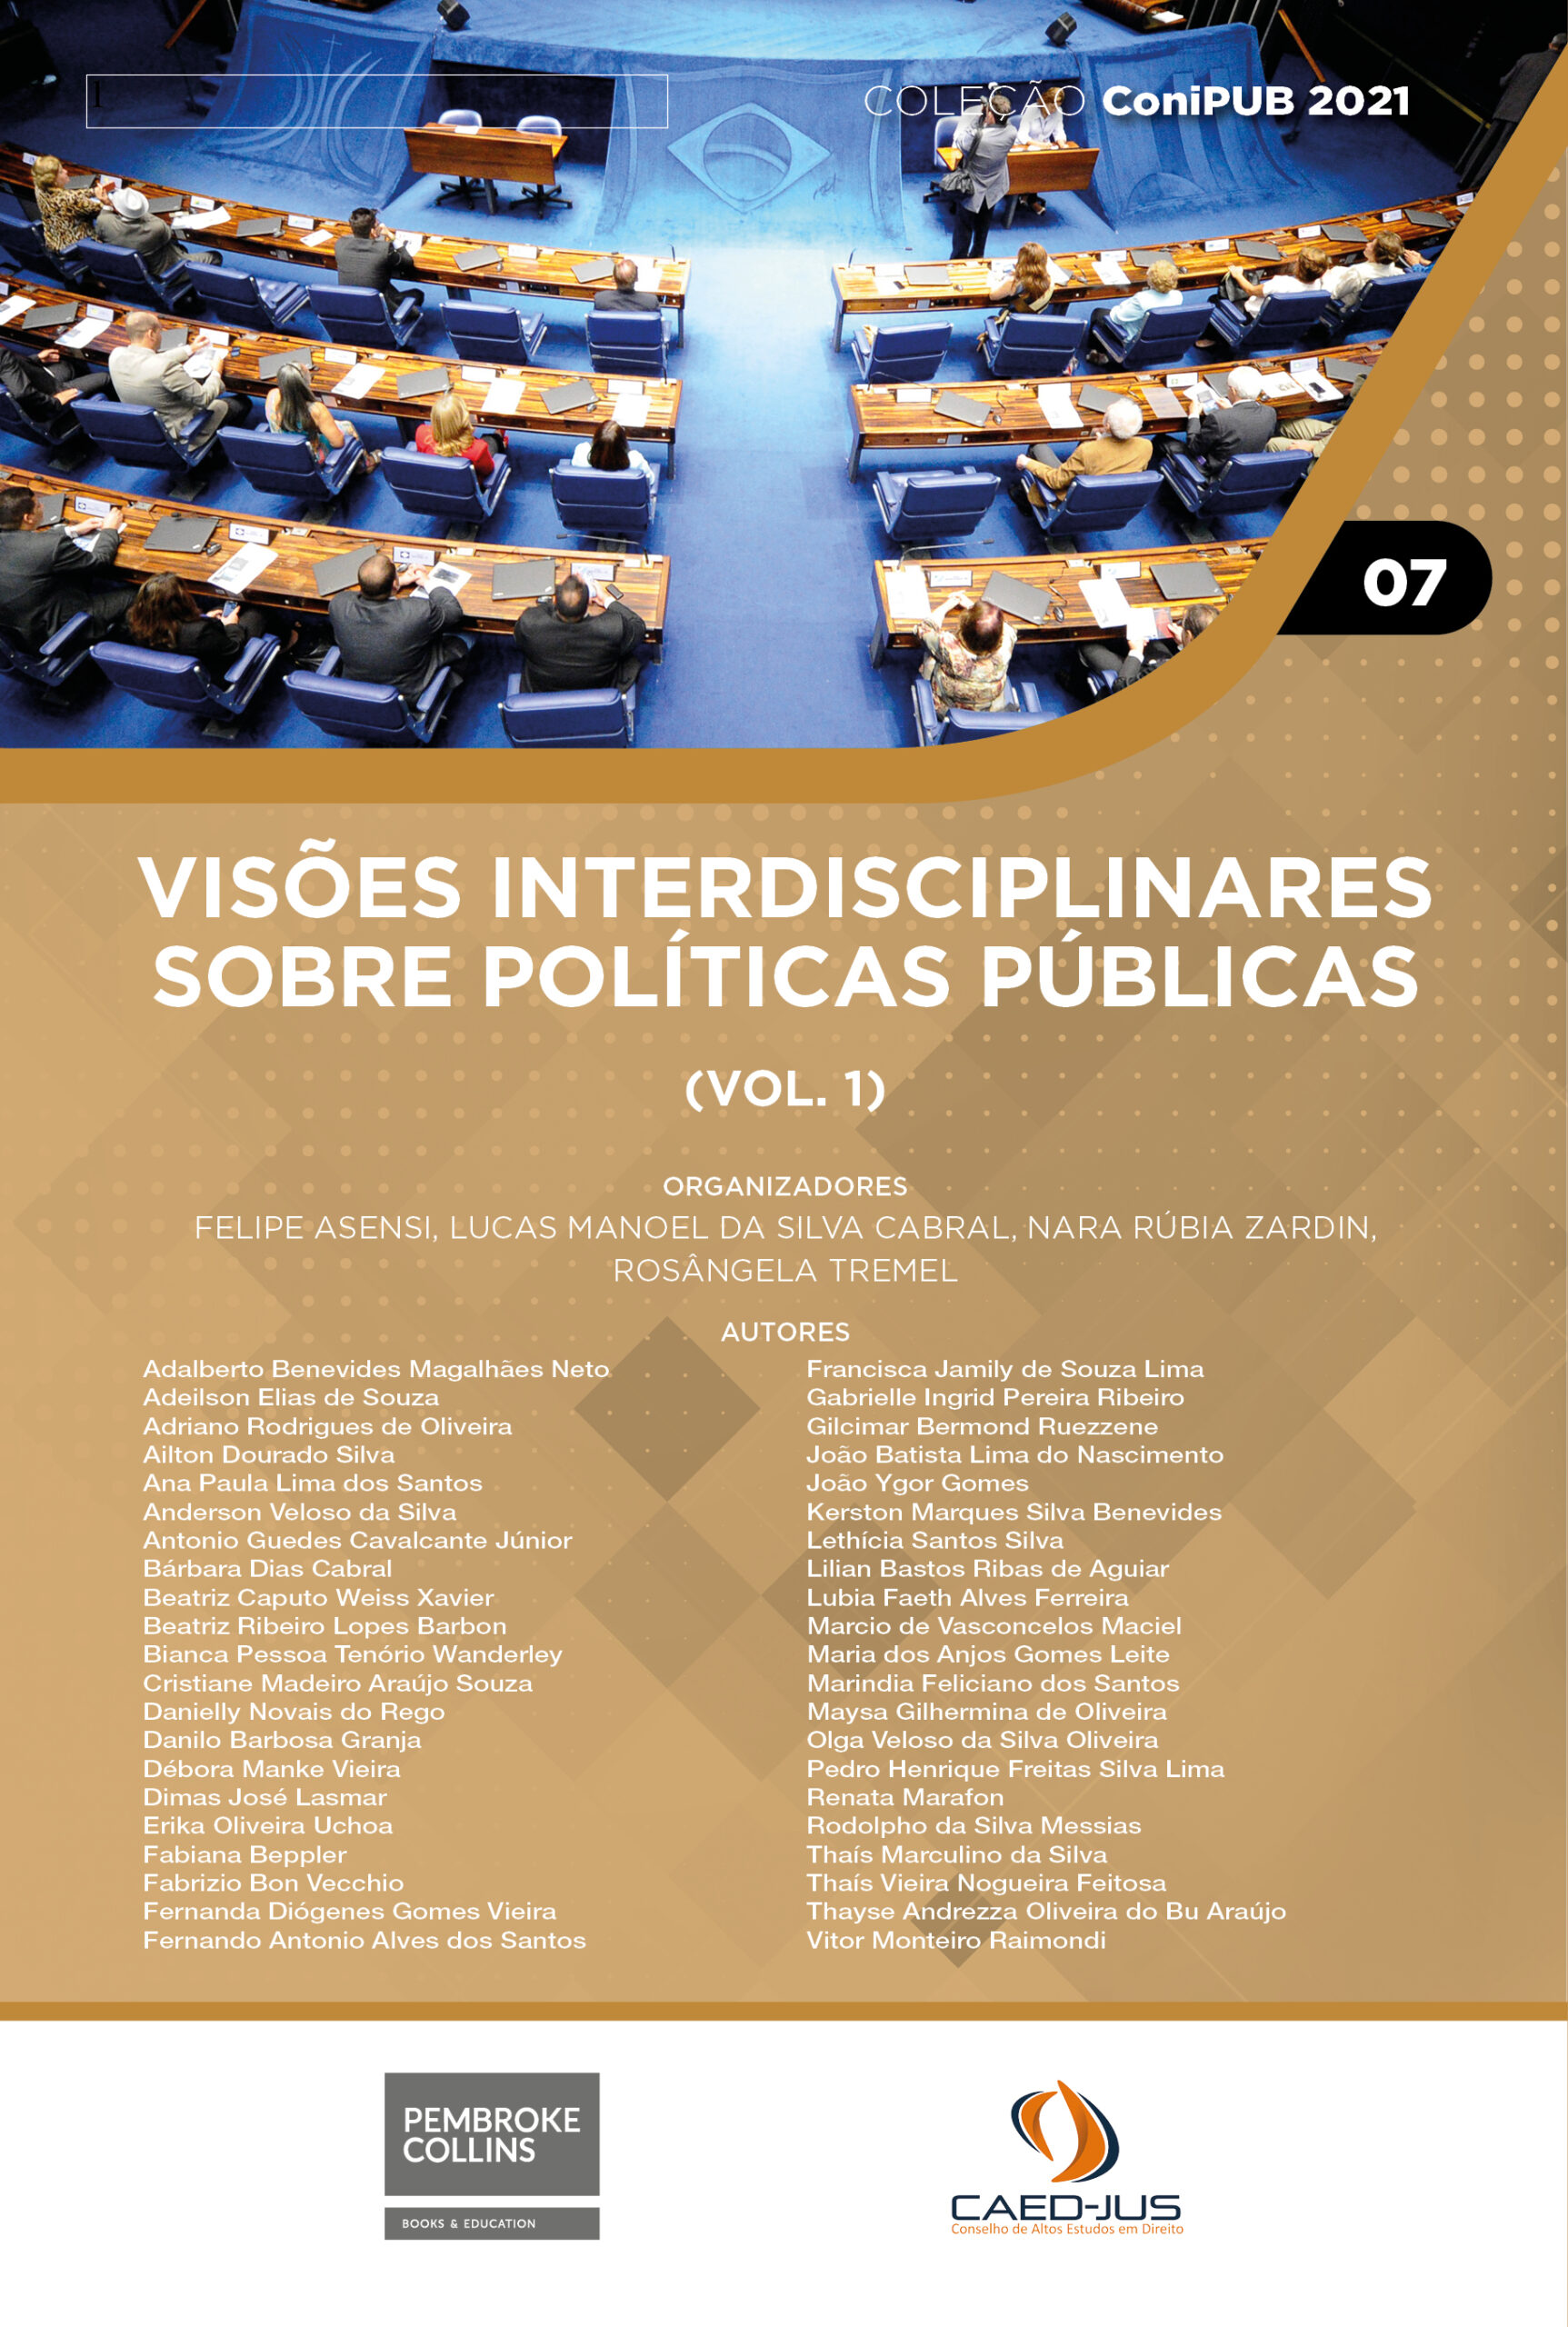 CONIPUB-2021-07-capa-Visoes-interdisciplinares-sobre-politicas-publicas-vol-1-Pembroke-Collins